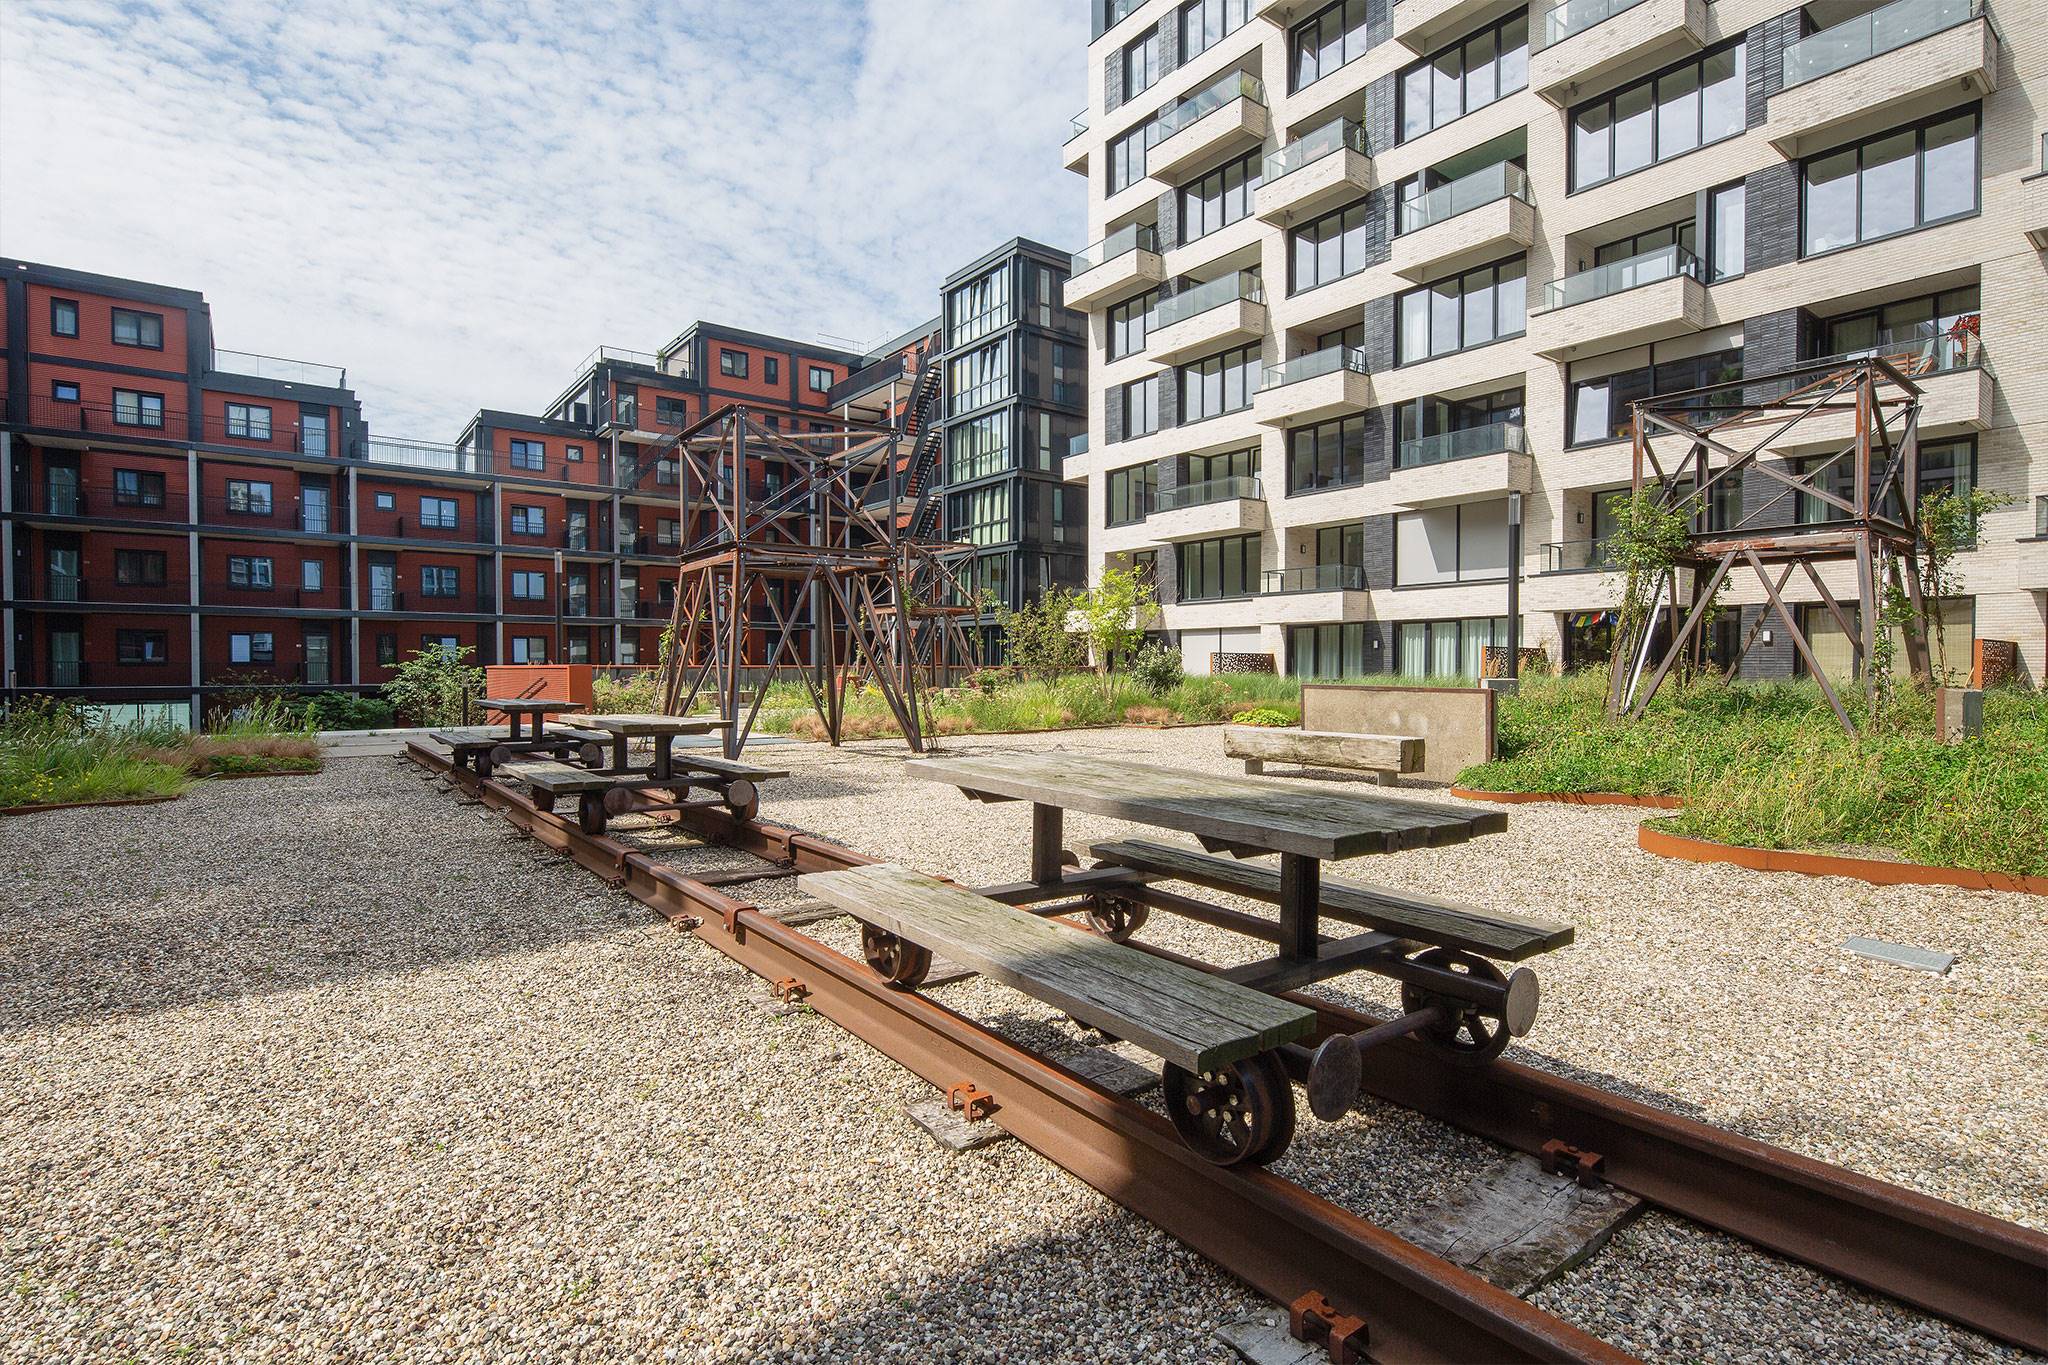 Pontkade, Amsterdam - Wij realiseerden een (semi) openbare ruimte op de NDSM werf voor omringende woningen